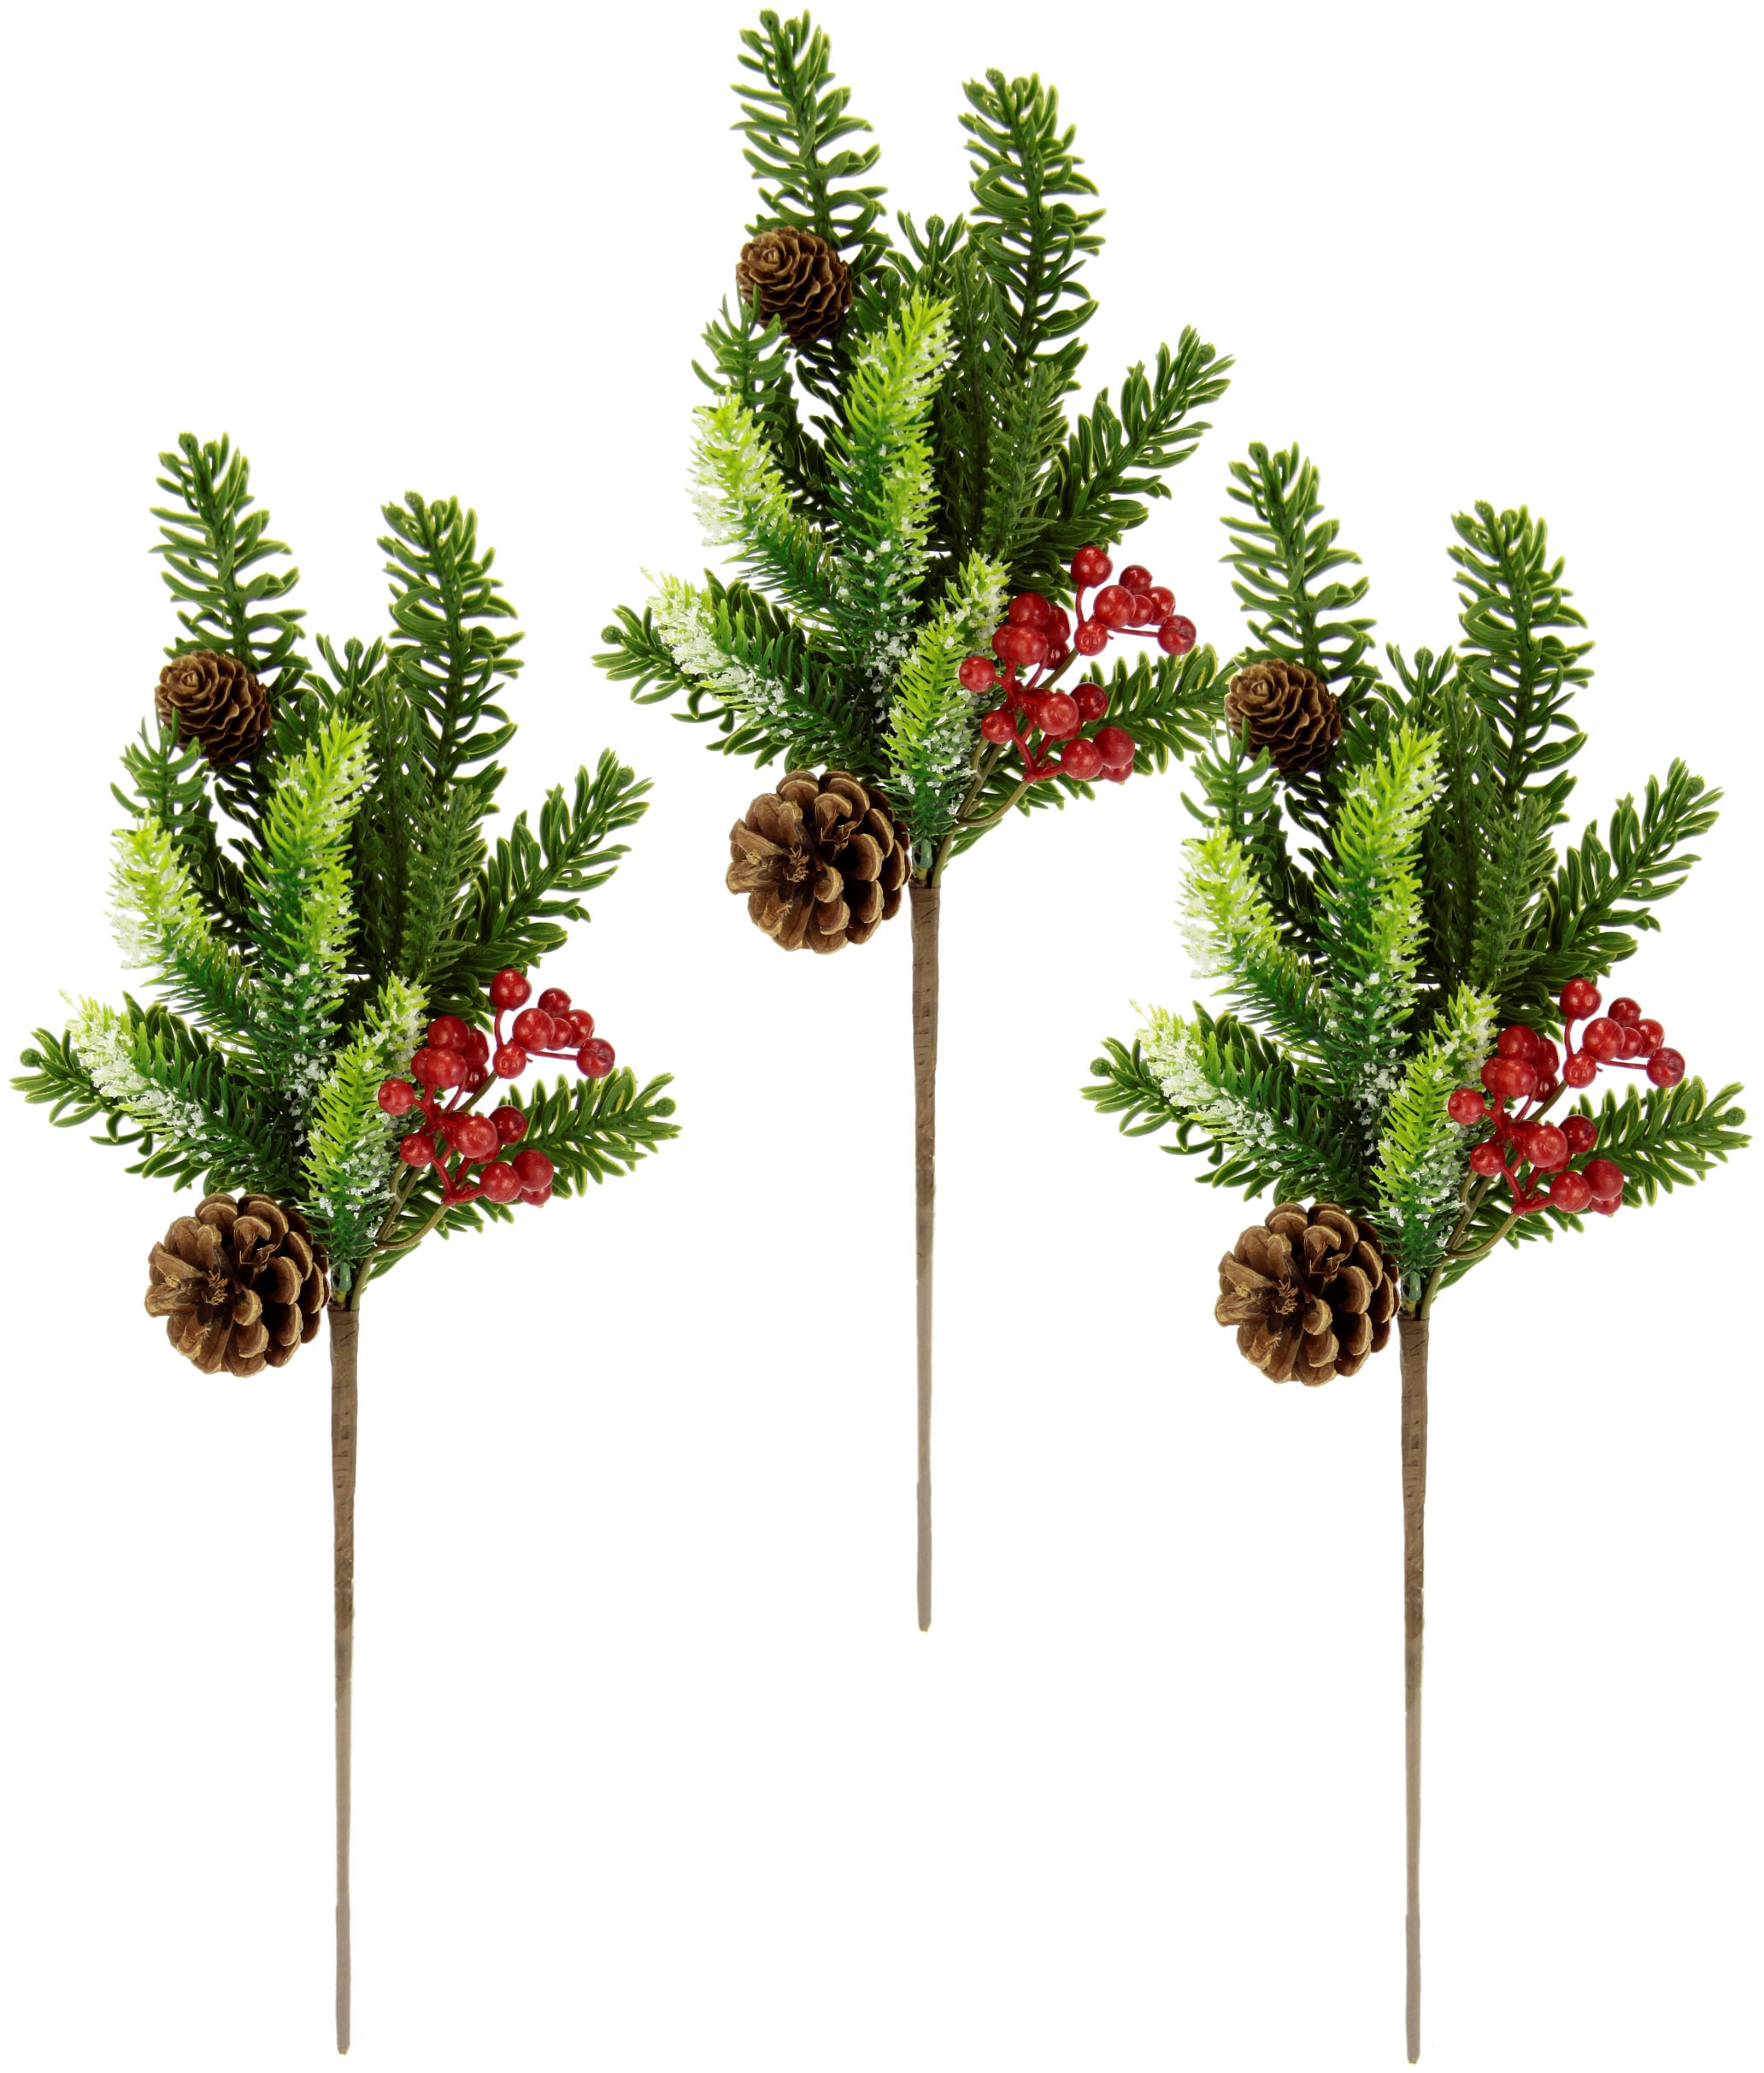 I.GE.A. Winterliche Kunstpflanze »Kunstzweig, Weihnachtsdeko«, mit echten Zapfen und Beeren, 3er Set, grün, rot, natur